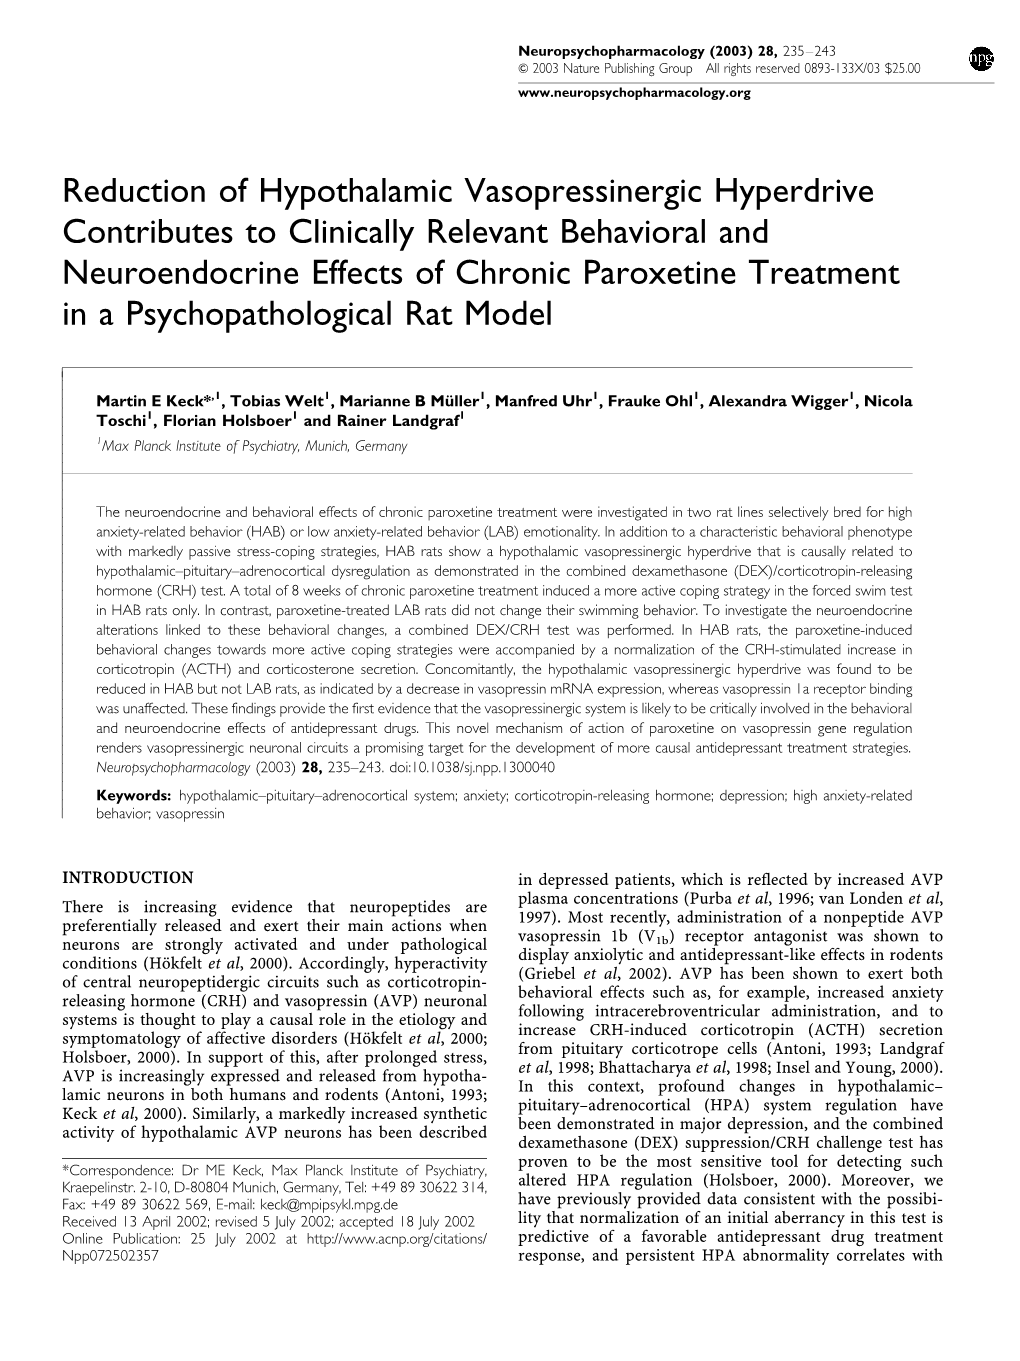 Reduction of Hypothalamic Vasopressinergic Hyperdrive